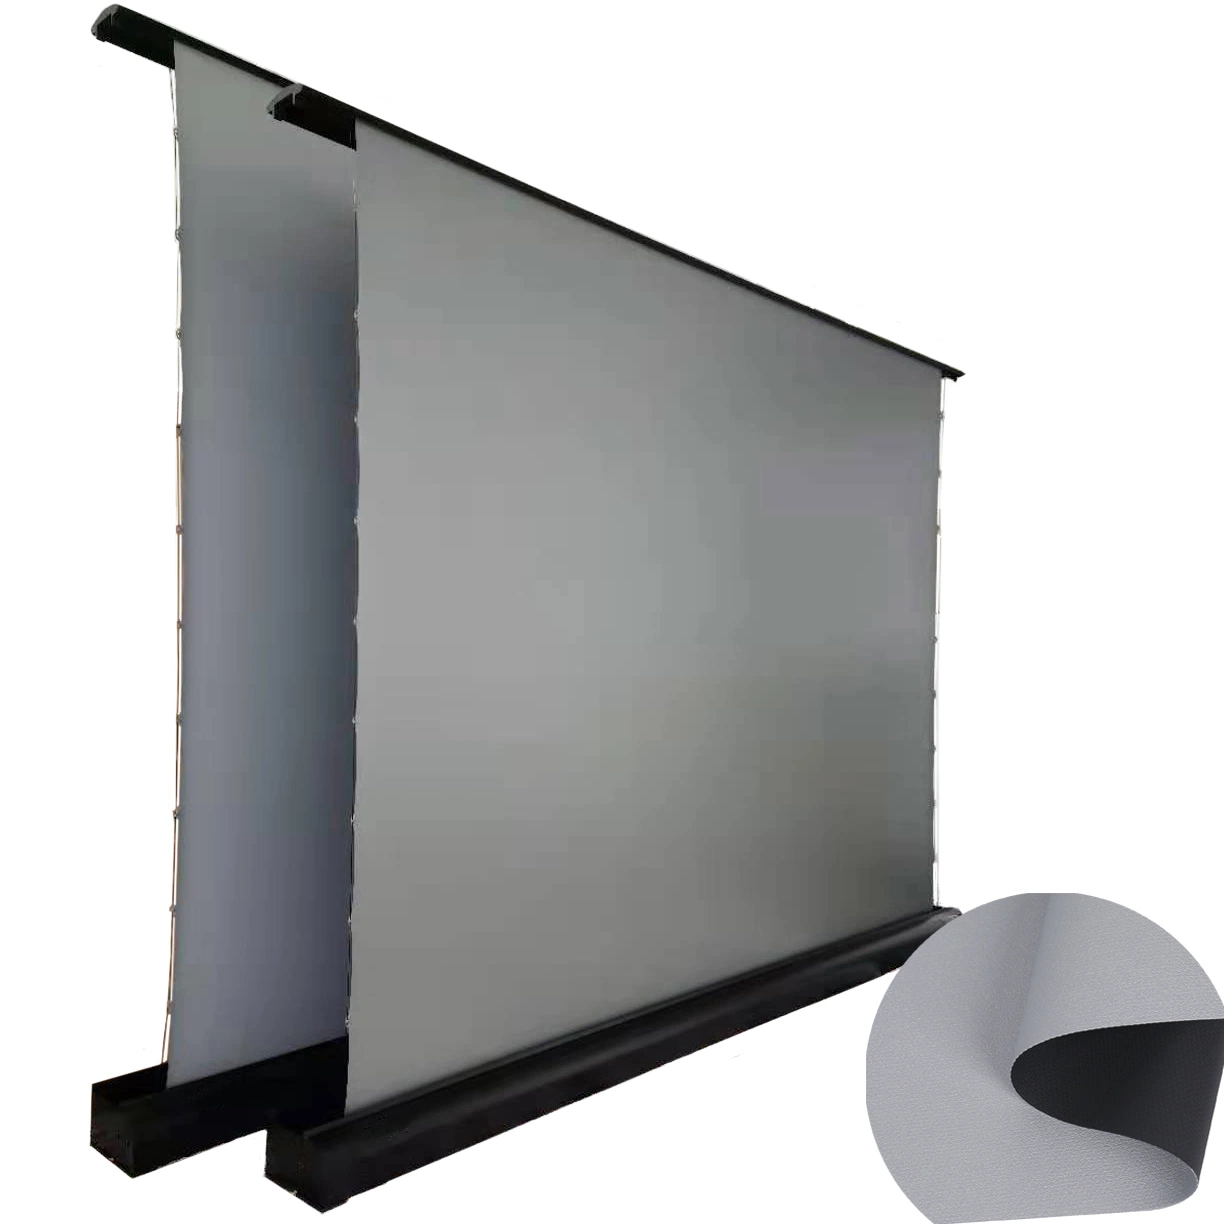 Super Silver tela proyección plana tejido de la pantalla de proyección pantalla trípode